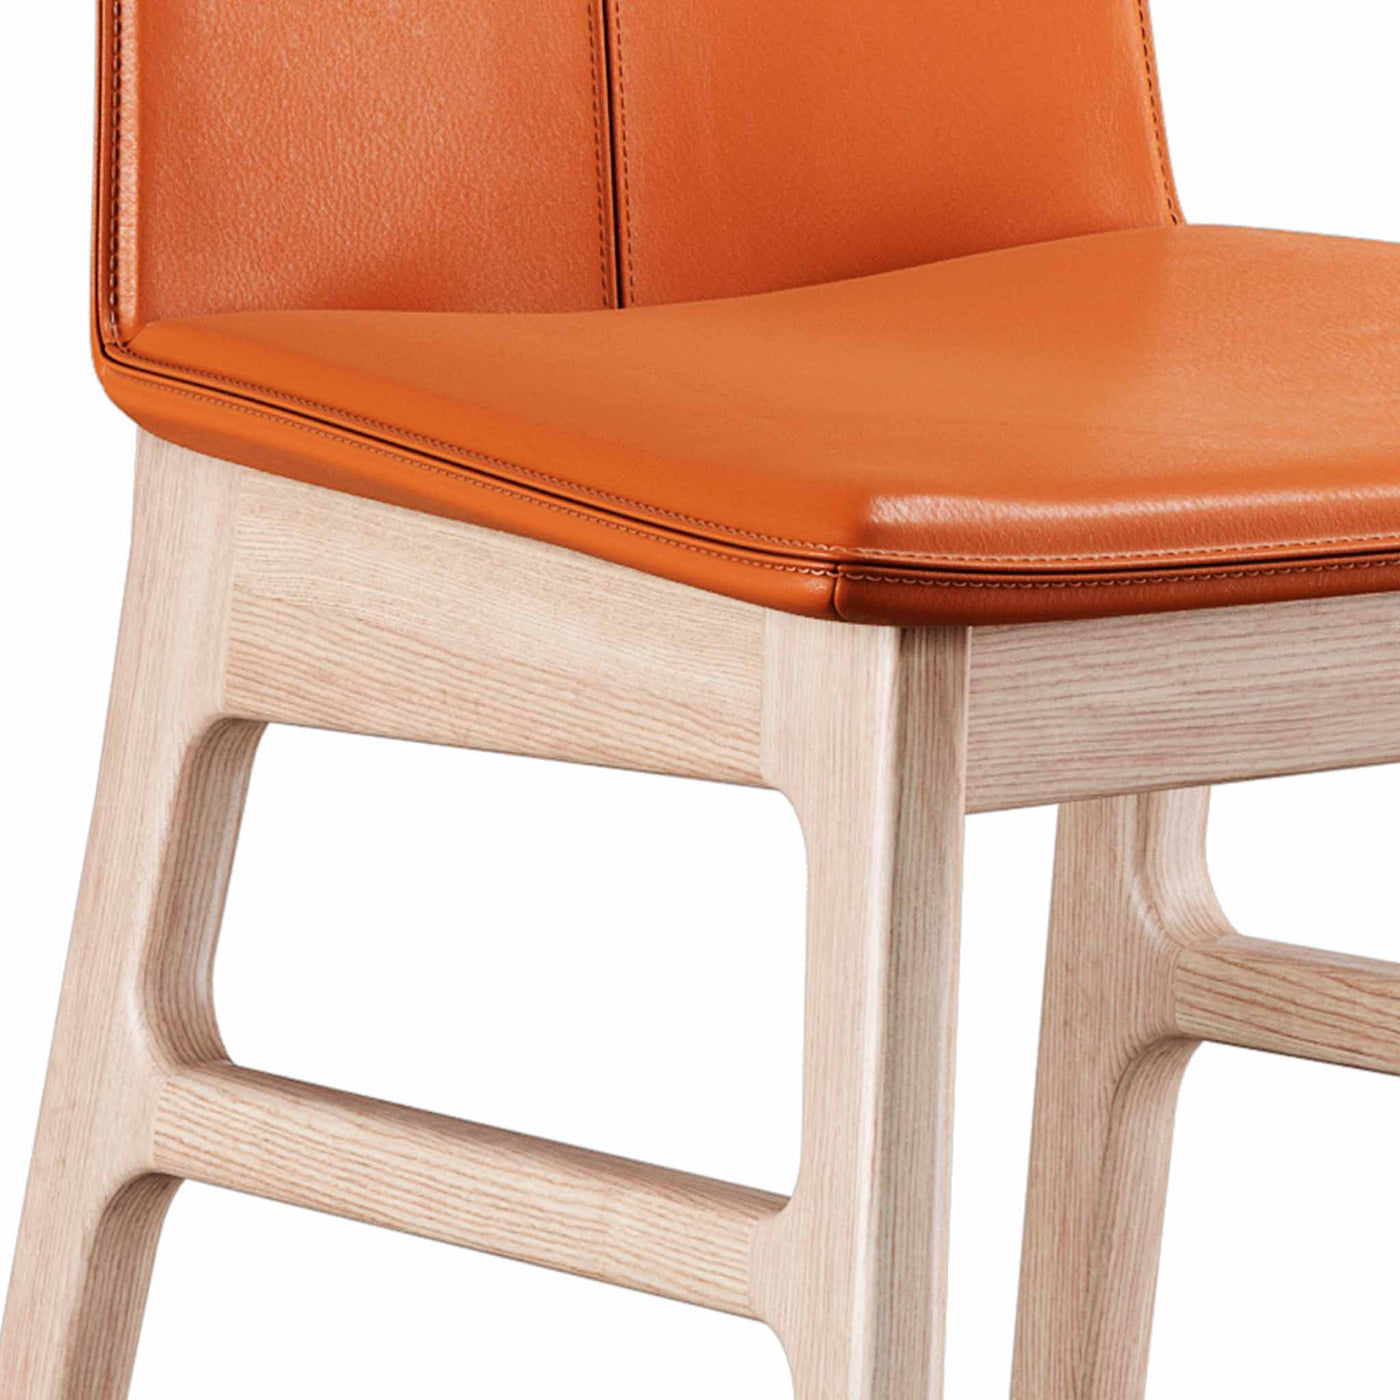 Sweetseat spisebordsstol med cognac læder sæde og ben i hvidolieret eg fra Casø Furniture